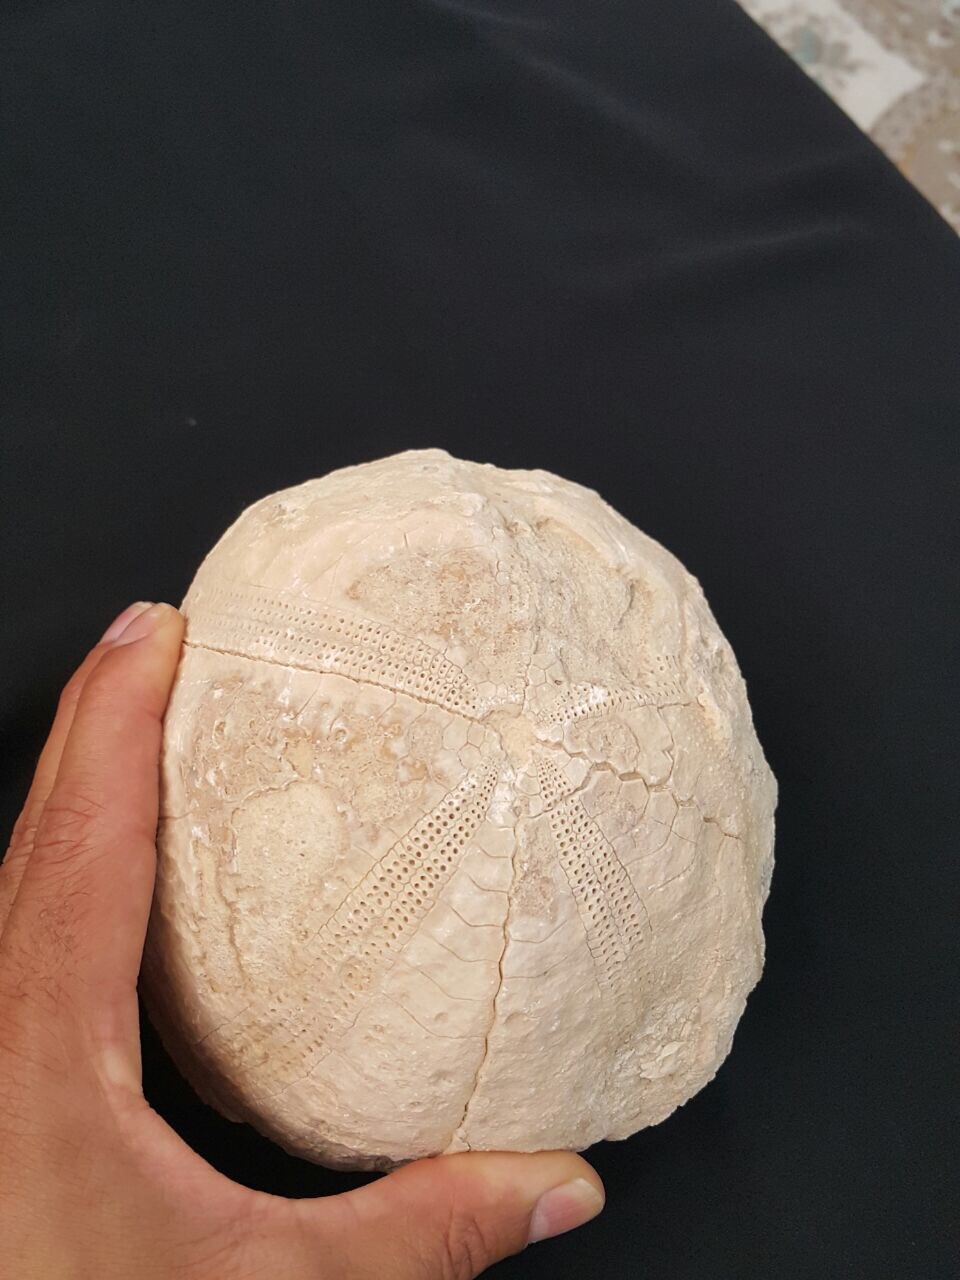 Sea urchin fossil found in Oman